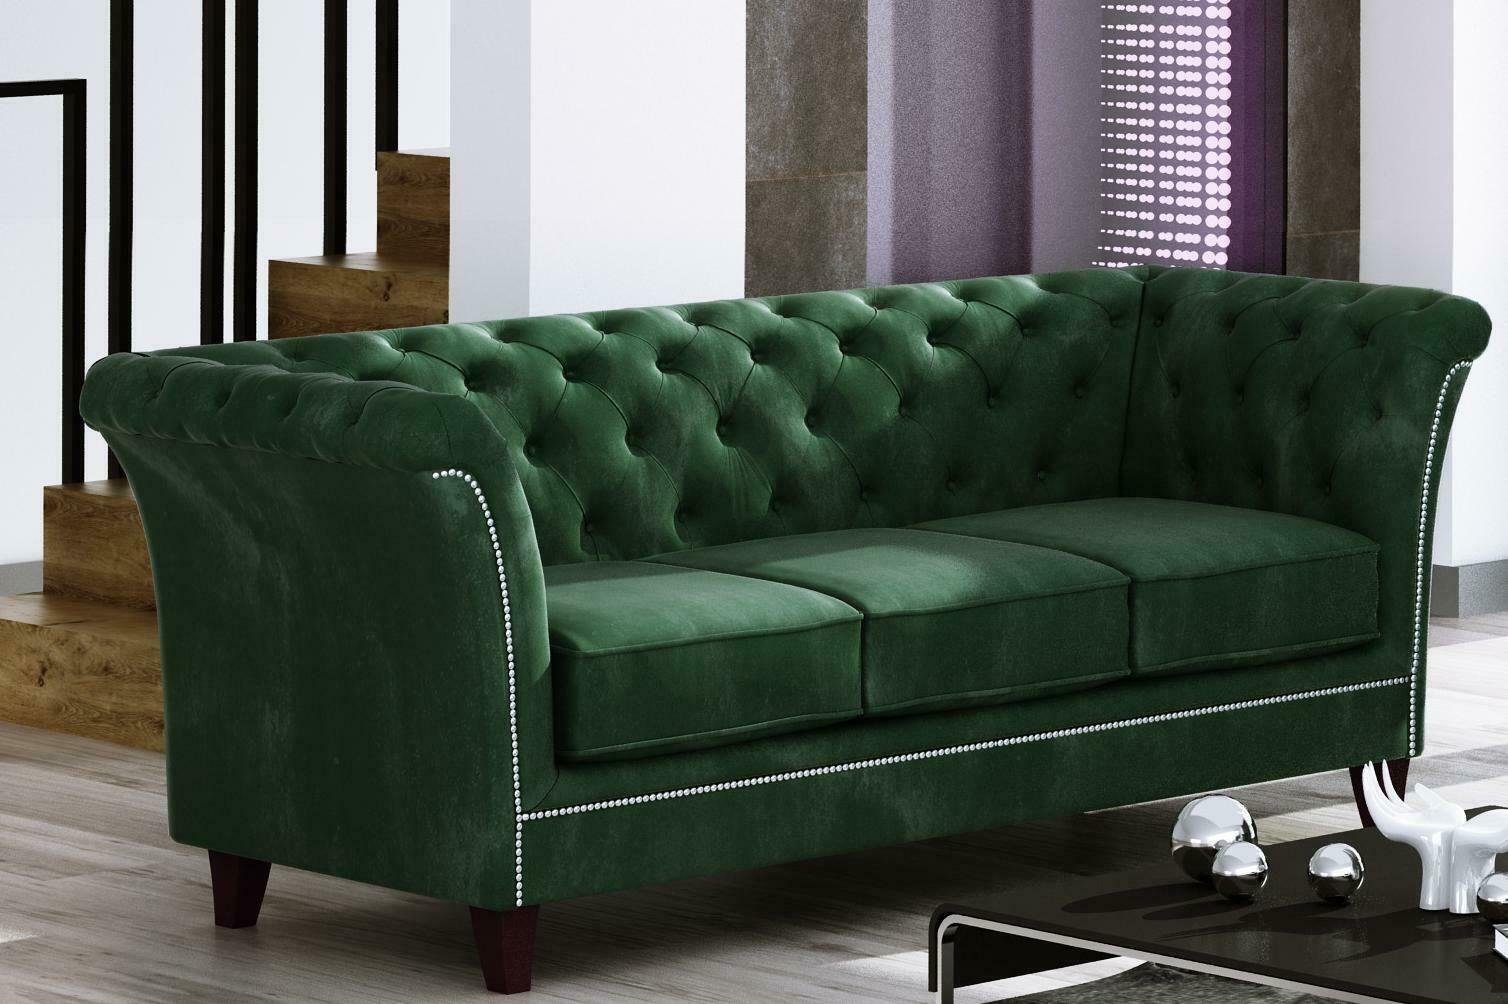 JVmoebel Sofa Grüner Dreisitzer Chesterfield Möbel Luxus 3-Sitzer Couch Edel Neu, Made in Europe Grau